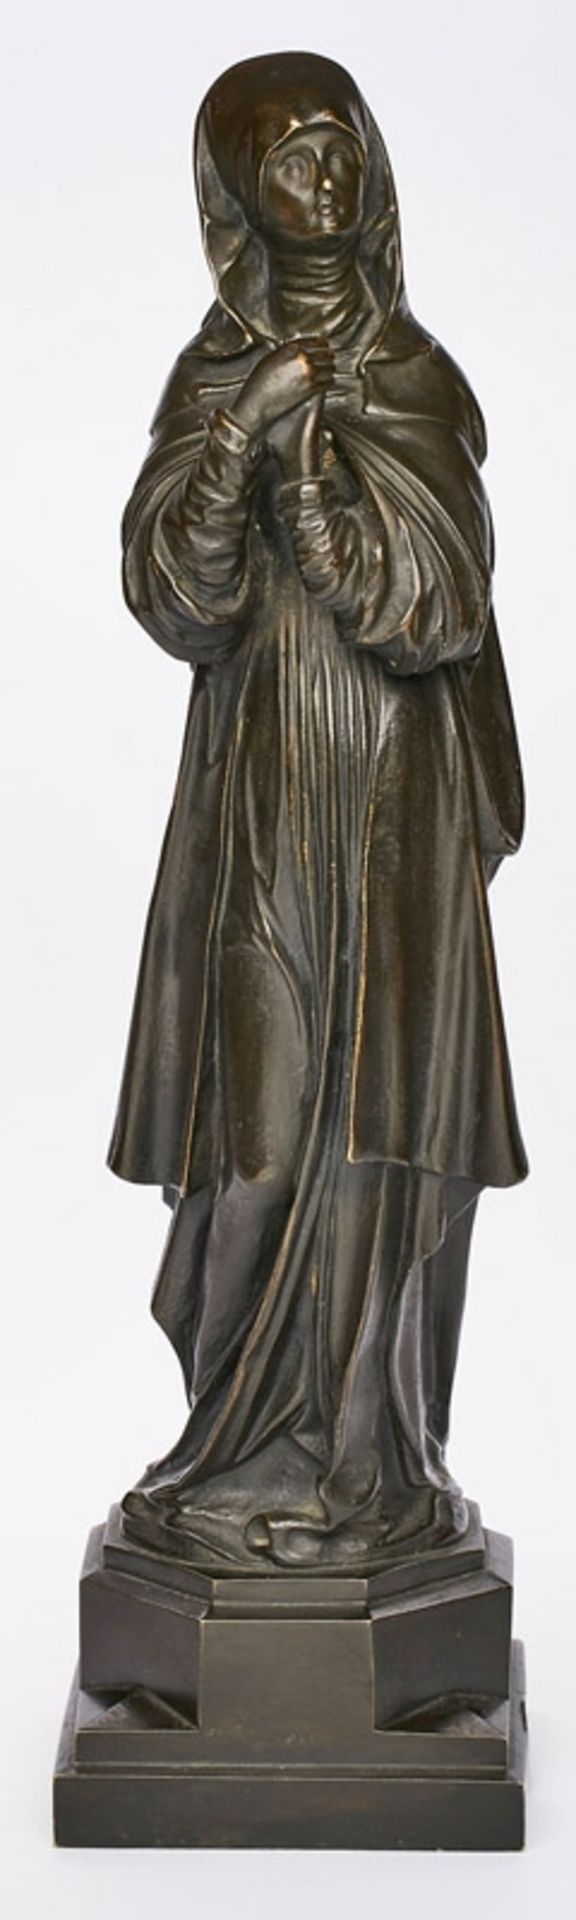 Bronzeskulptur "Nürnberger Madonna" um